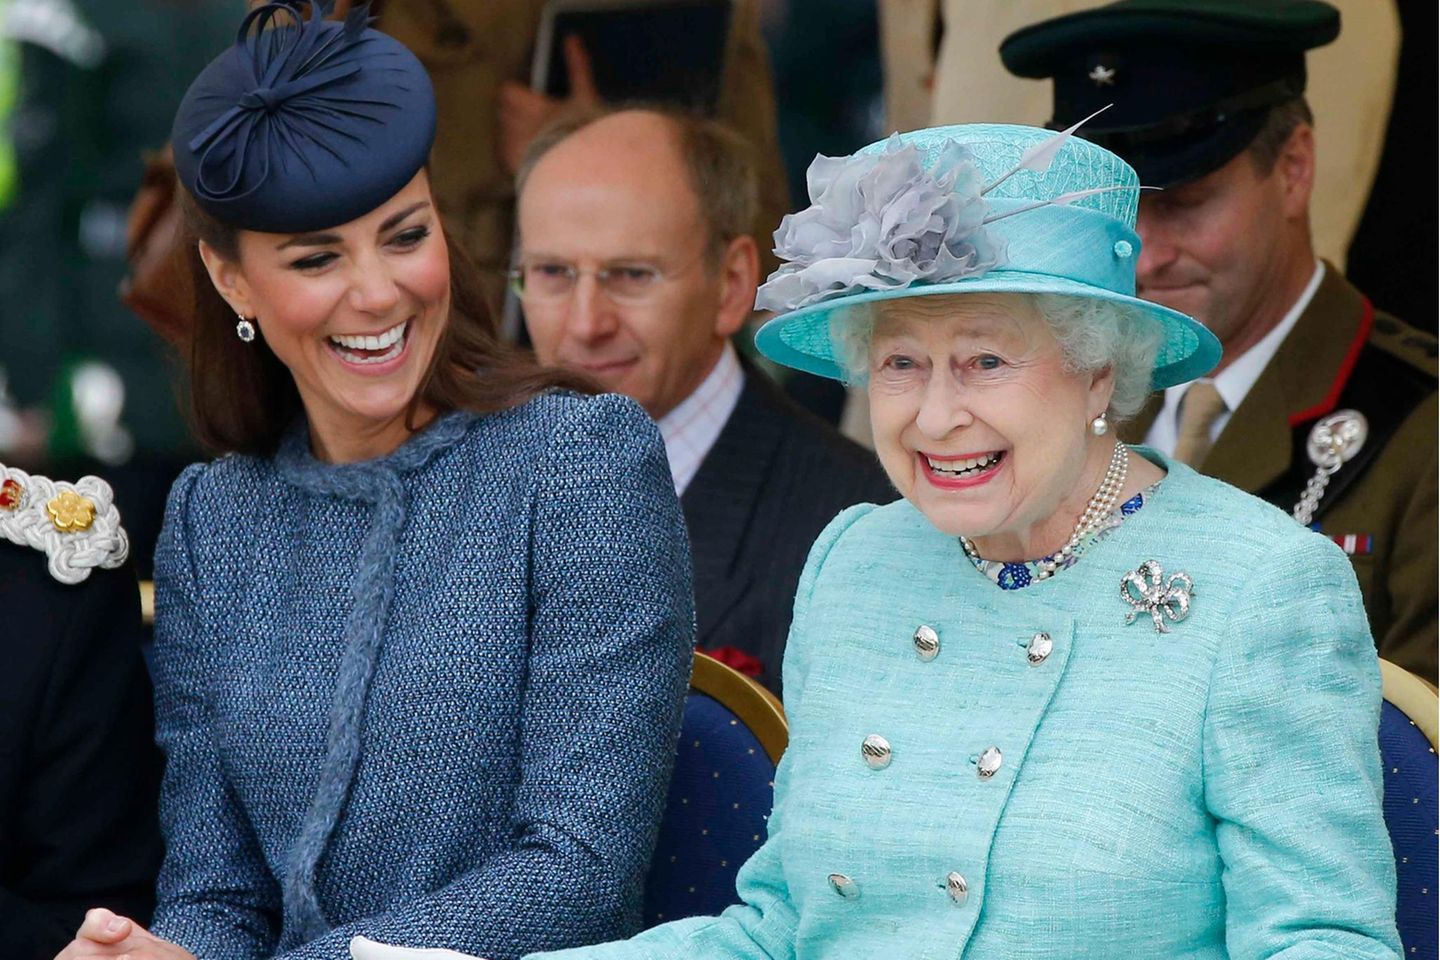 Als die Queen 2019 erstmals zu zweit mit Herzogin Catherine einen Termin absolvierte, war die Signalwirkung groß: Hier kommt die Zukunft. Einige ihrer Schirmherrschaften hat die Monarchin schon an die Schwieger-Enkelin übergeben